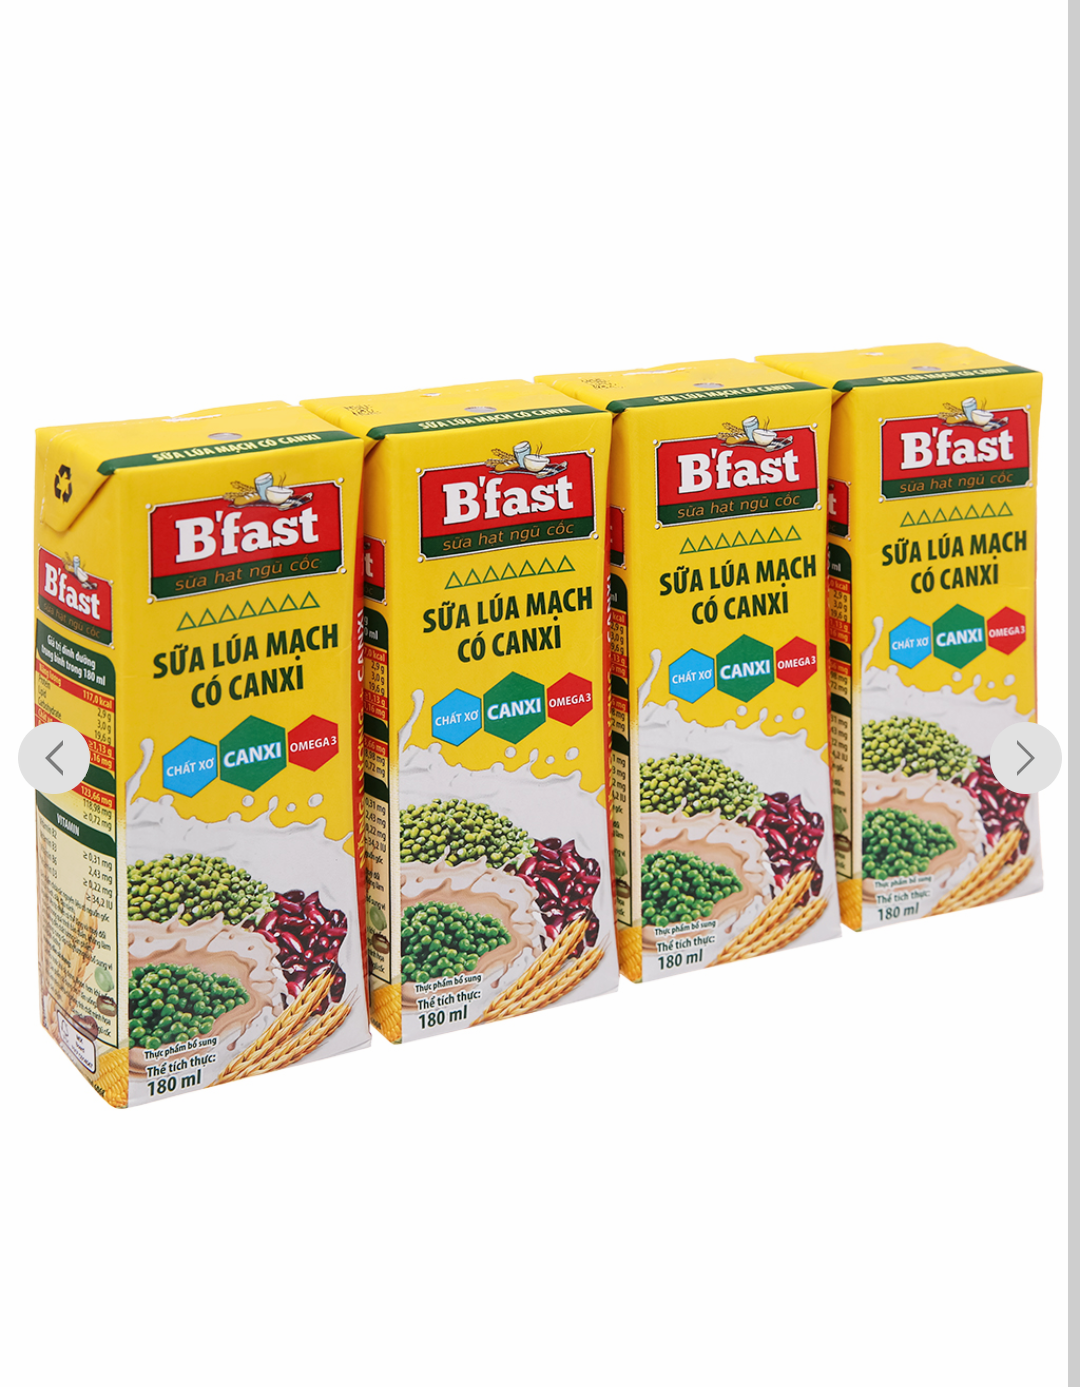 Sữa lúa mạch Bfast thơm ngon bổ dưỡng 1 lốc  4 hộp x 180ml